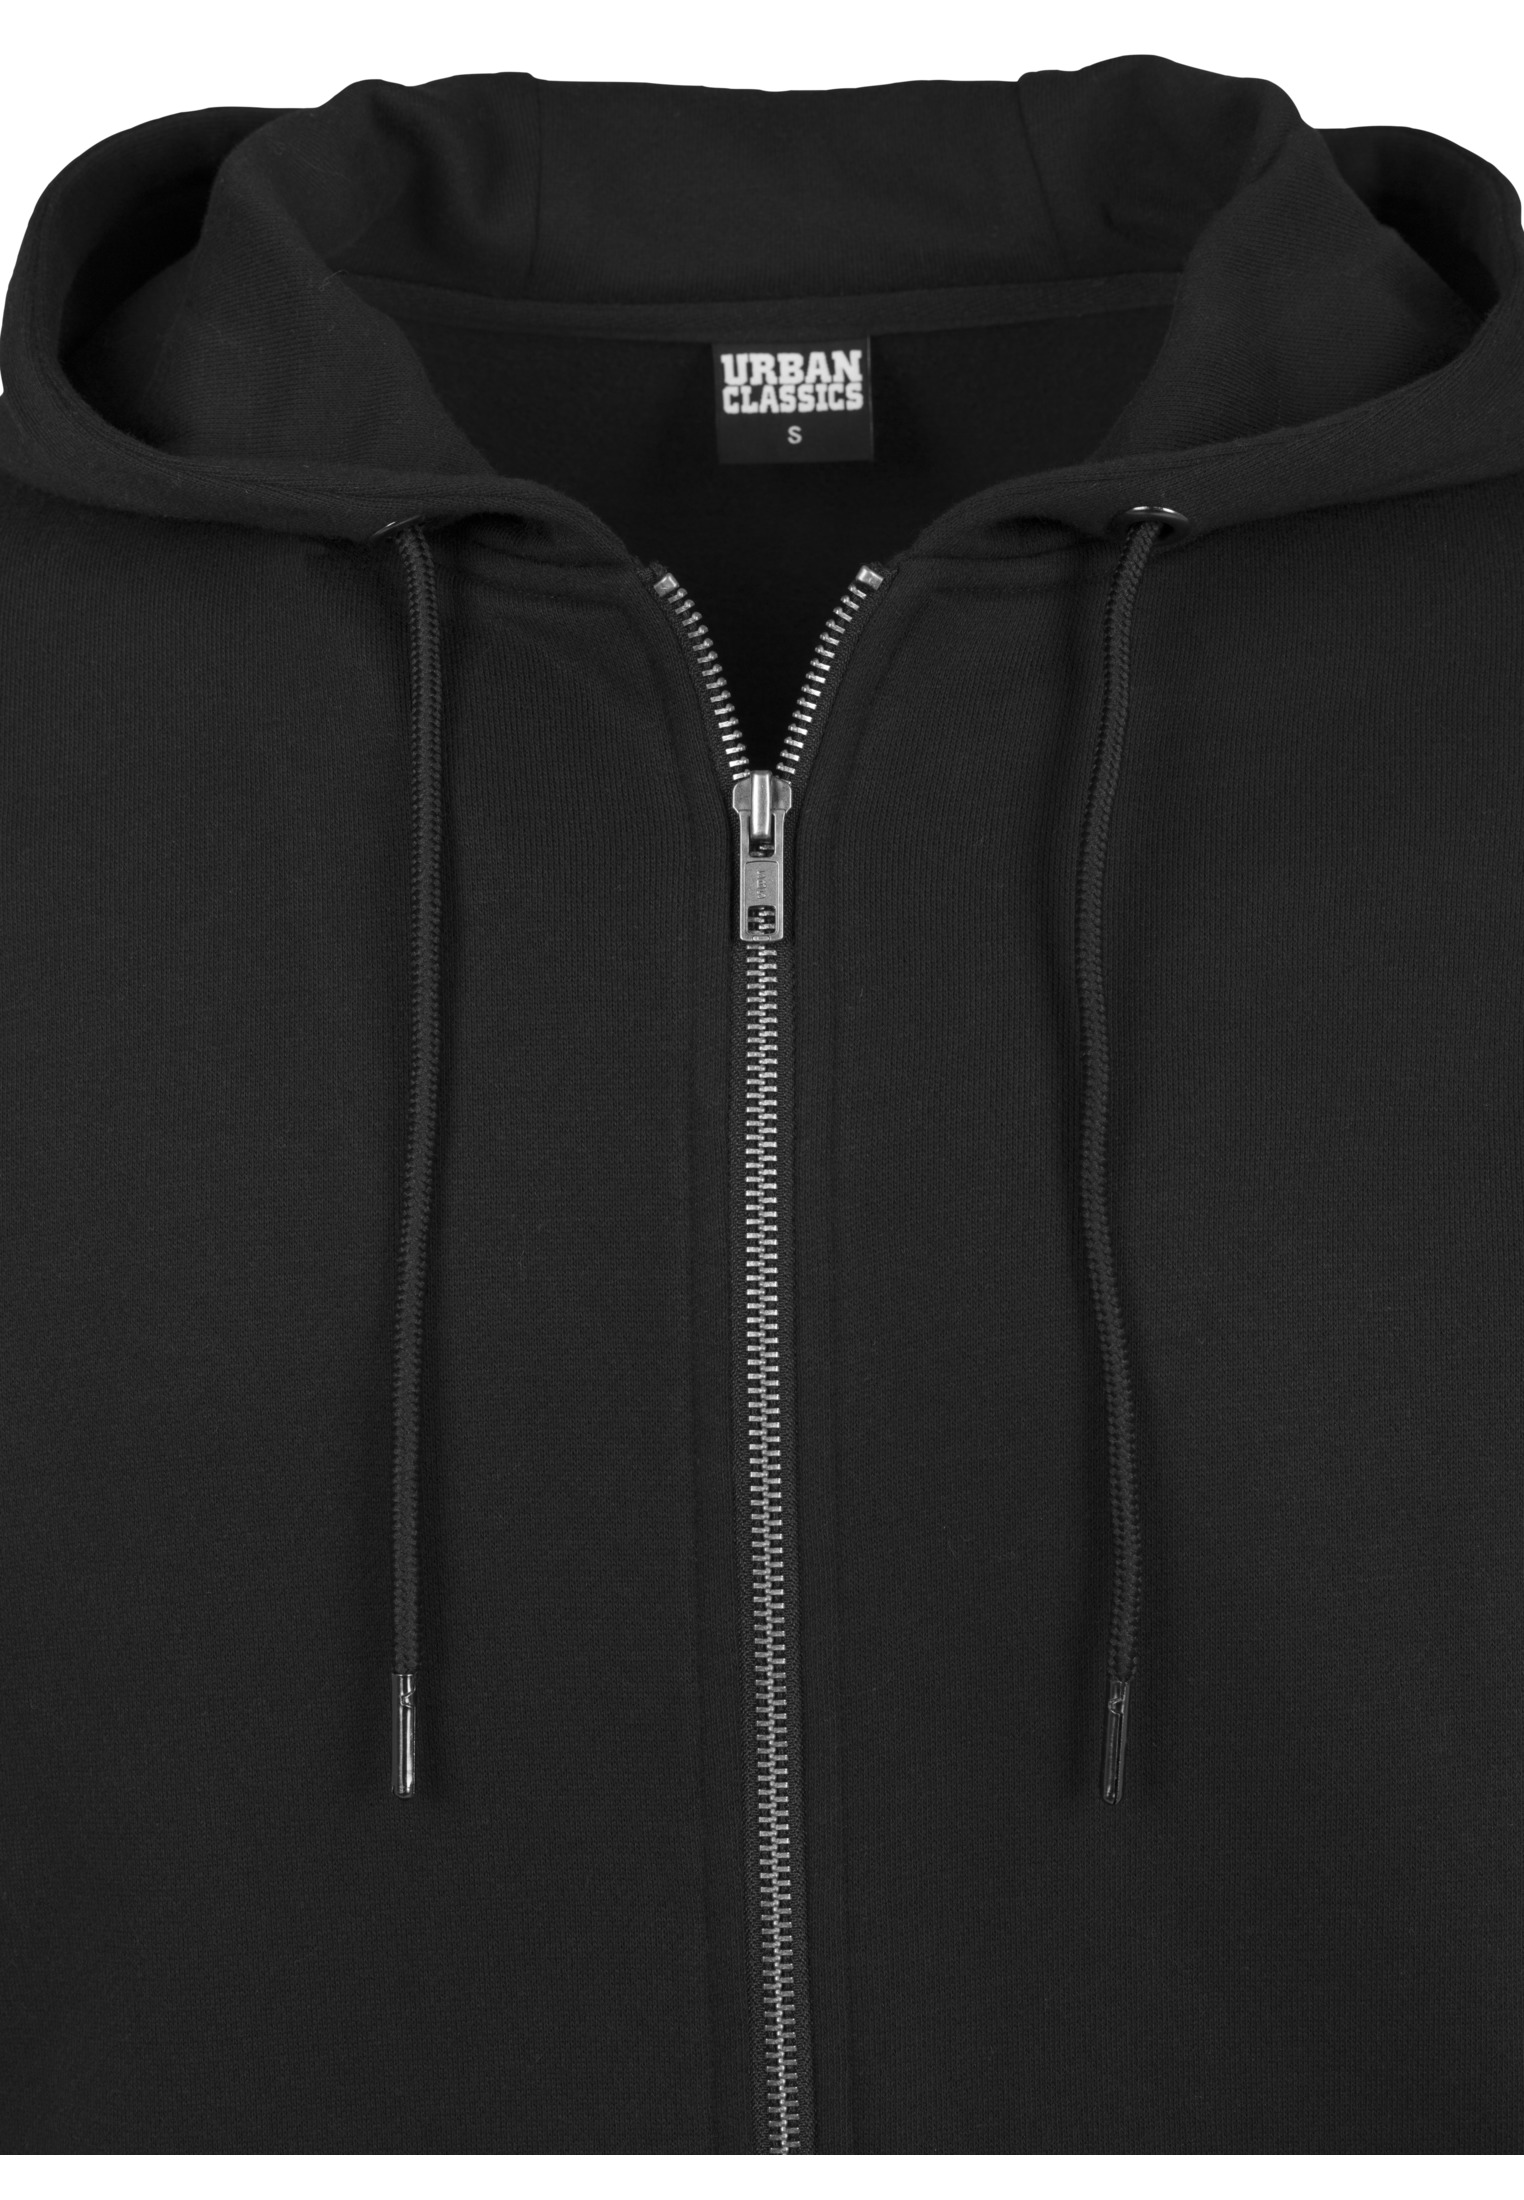 Zip Hoodies Basic Zip Hoody in Farbe black